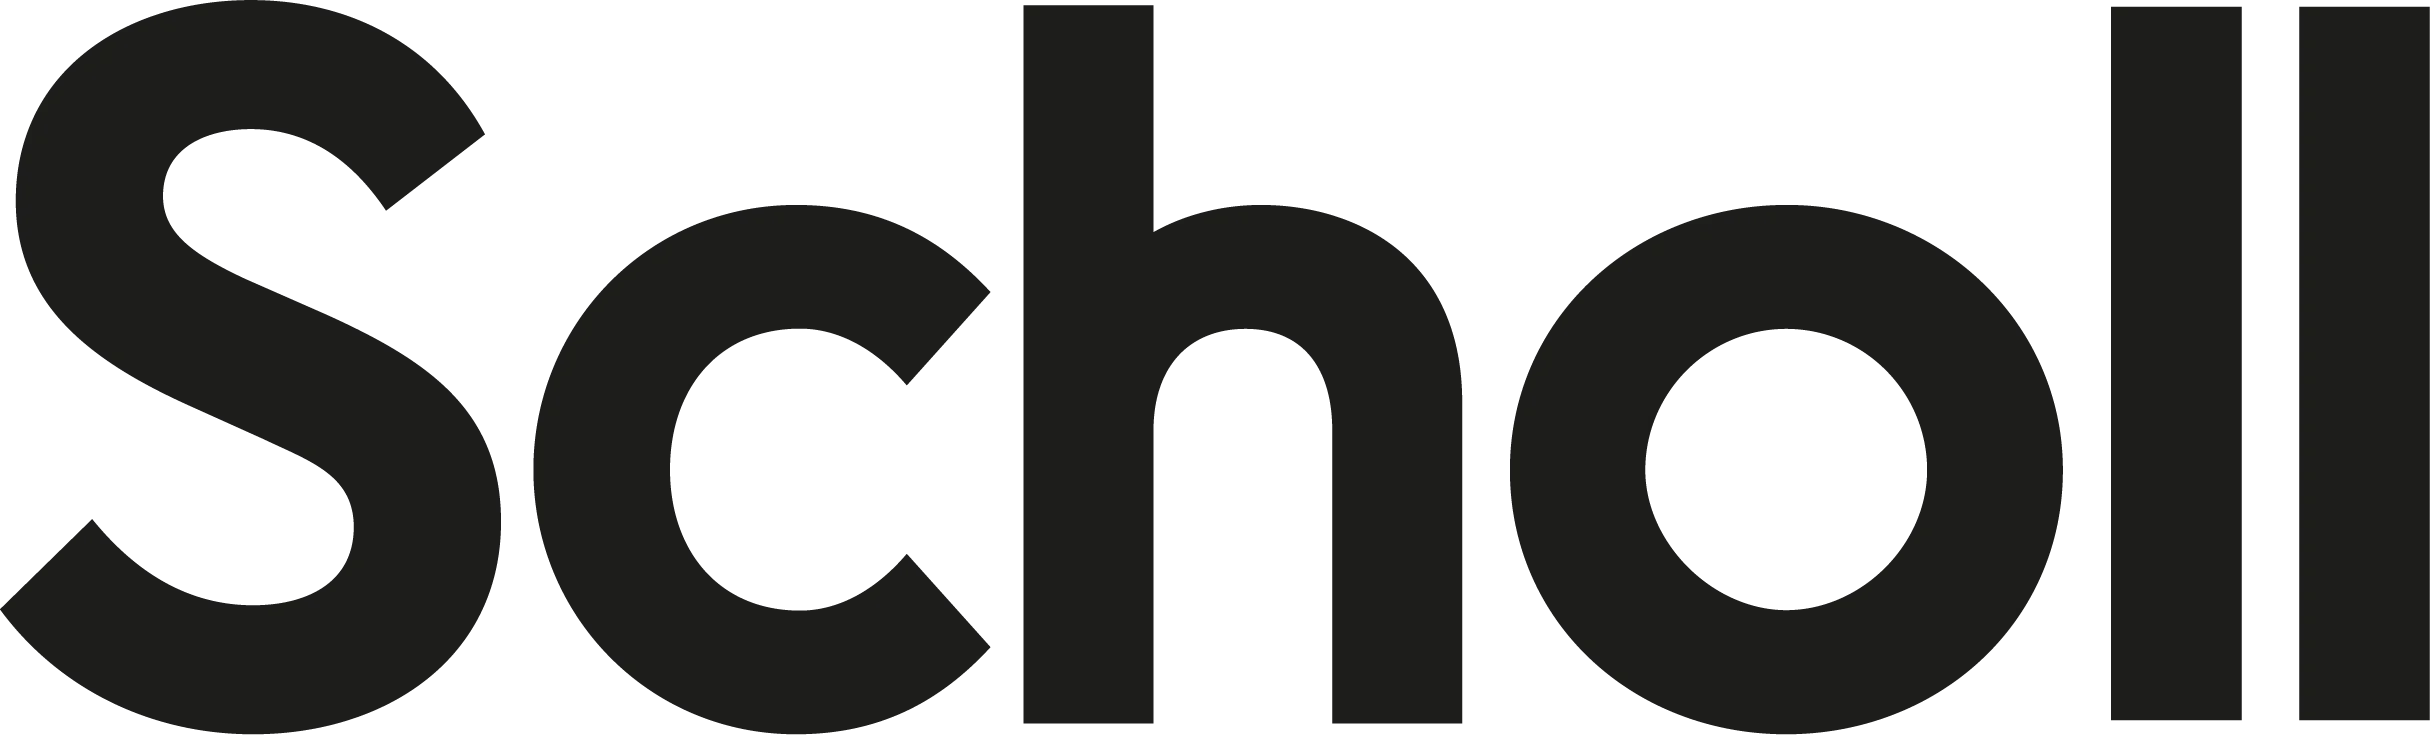 scholl logo